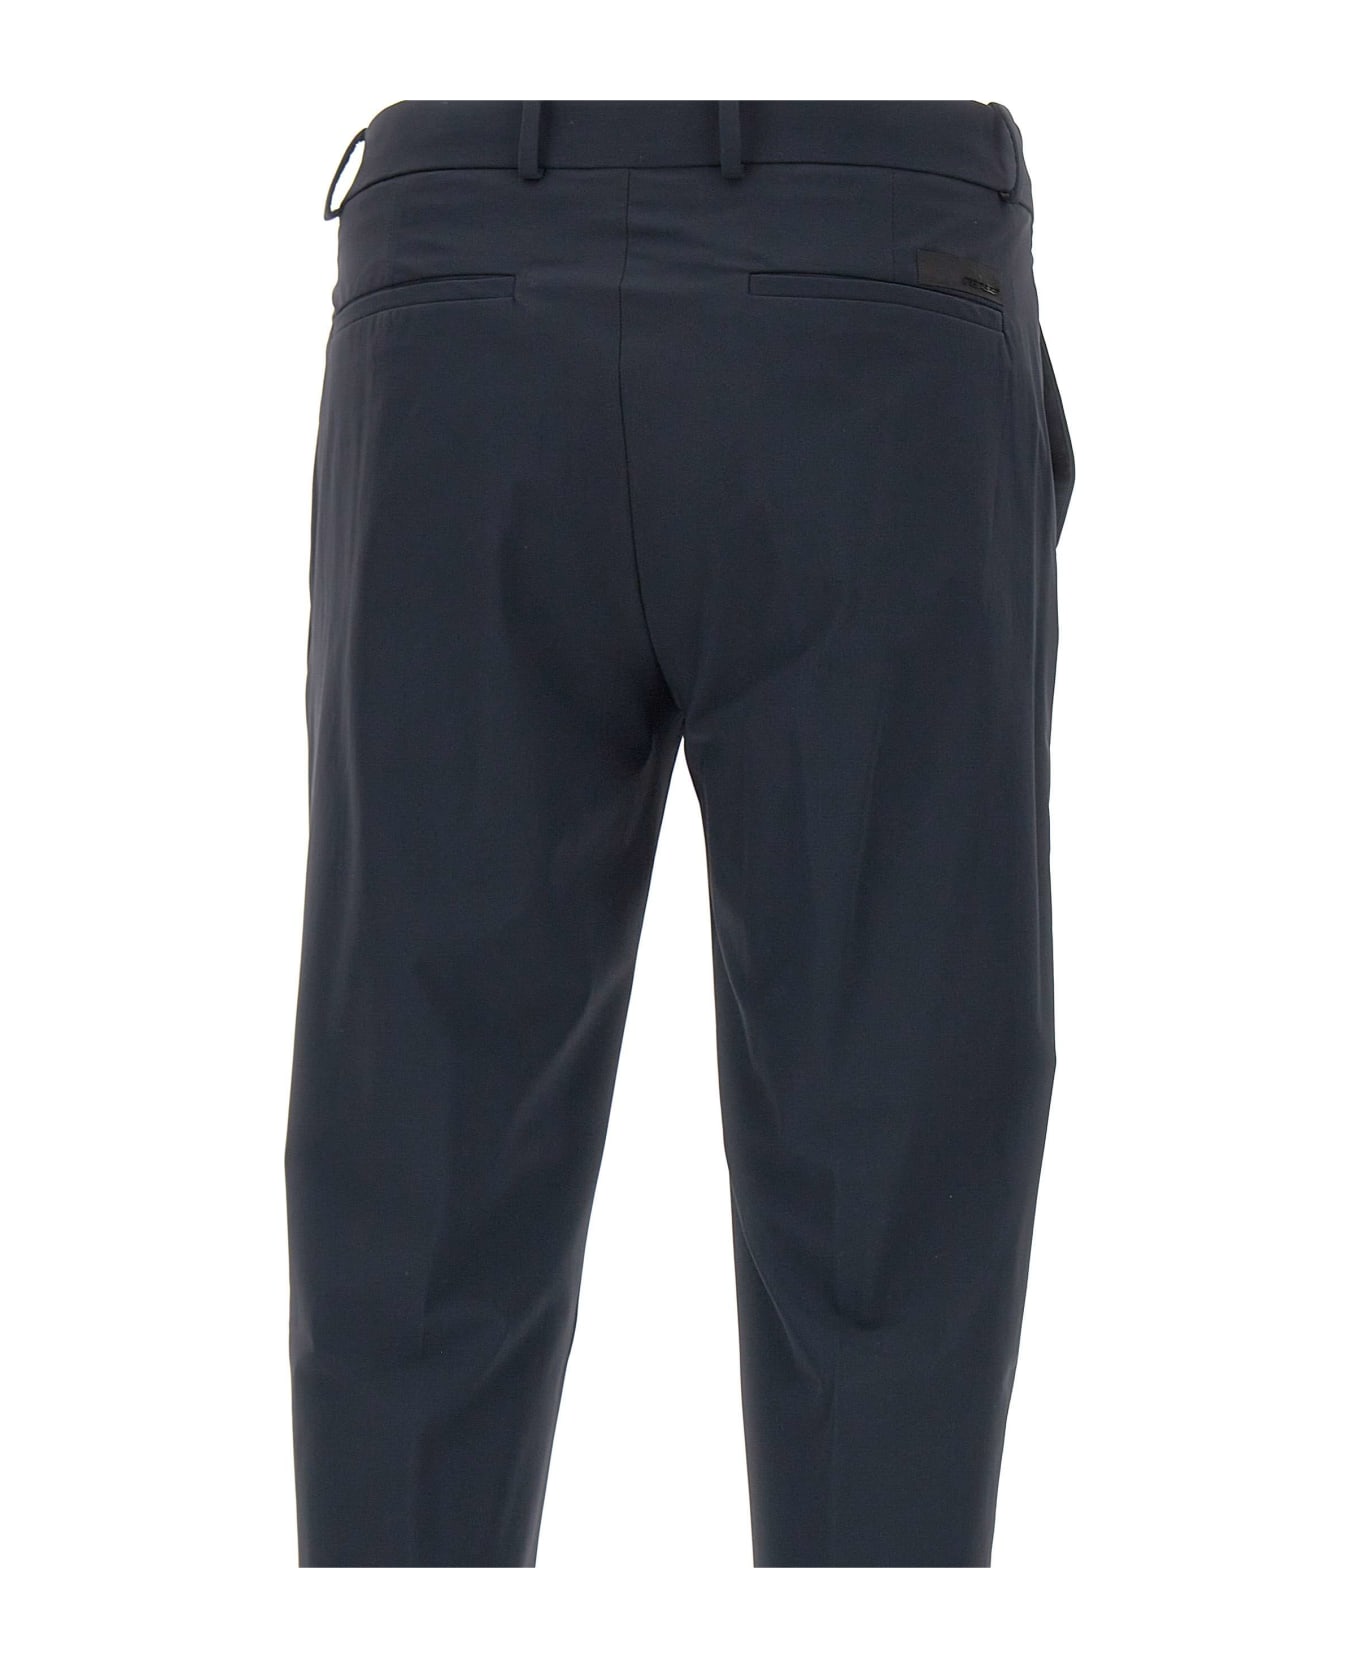 RRD - Roberto Ricci Design Men's Trousers "revo Chino" - BLUE ボトムス